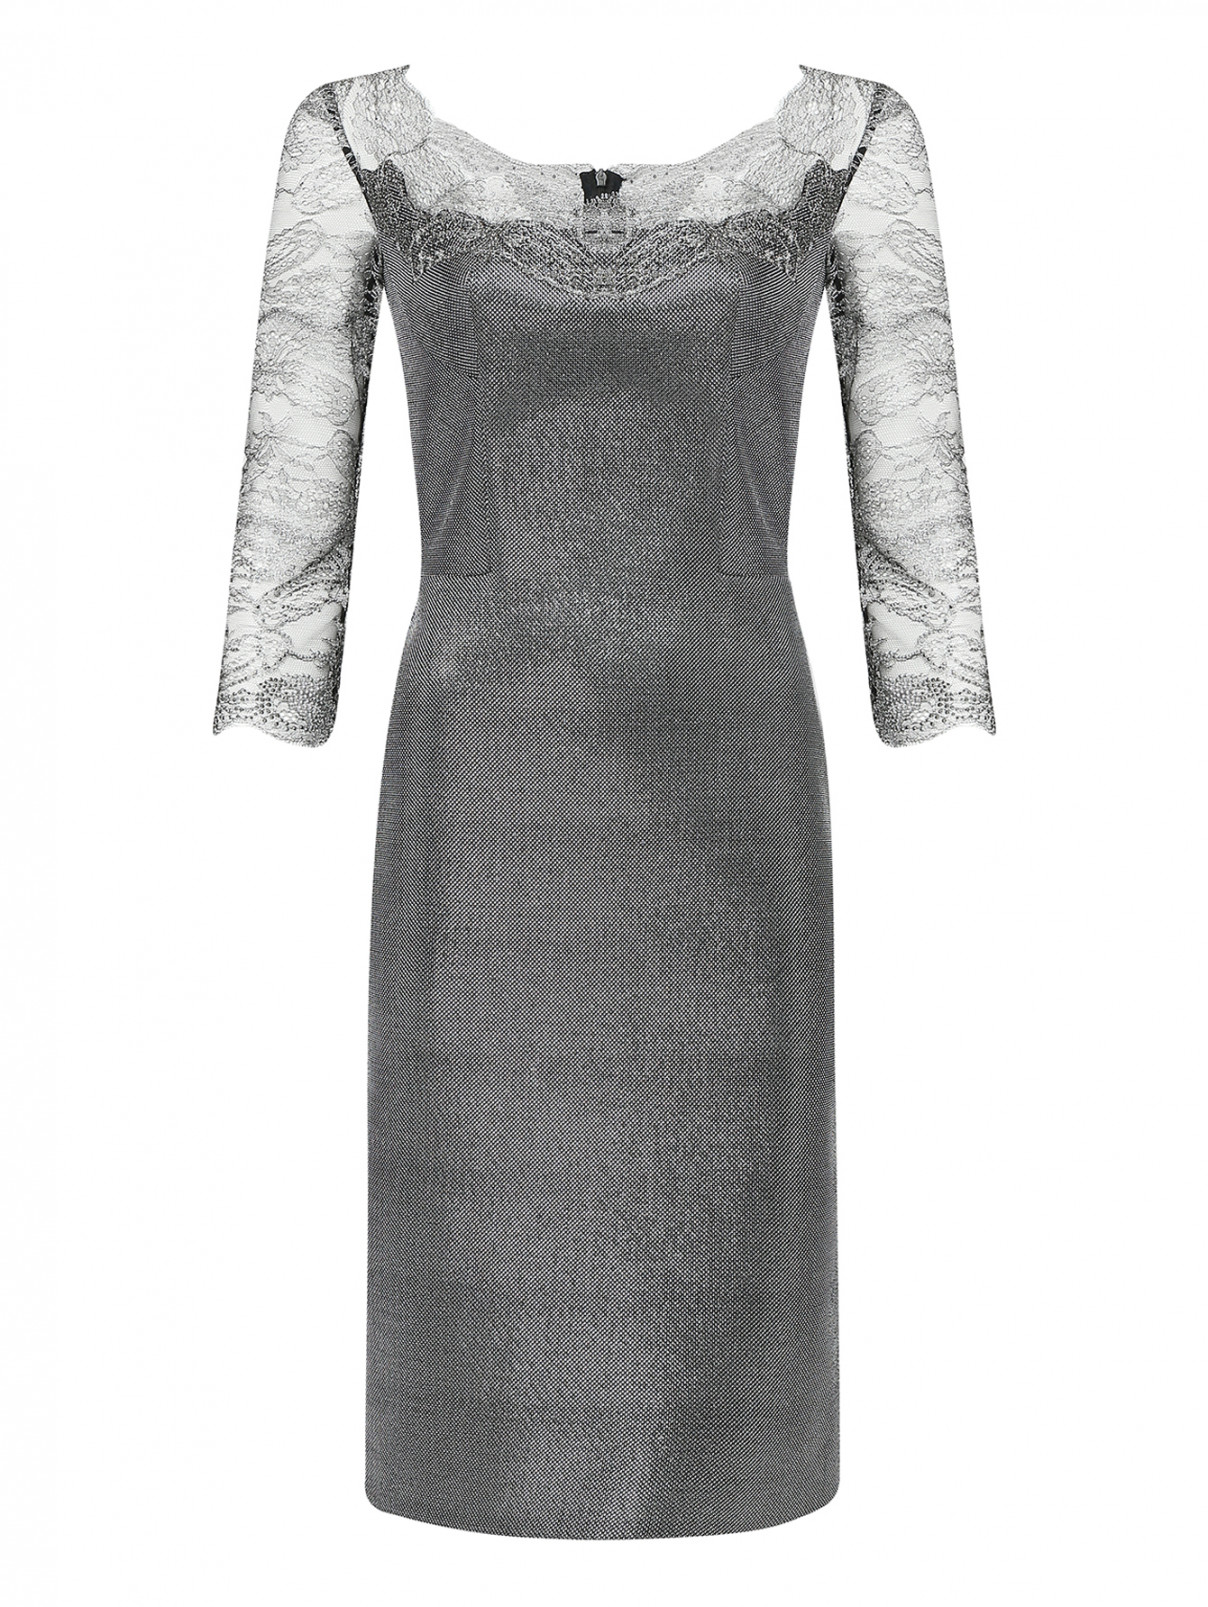 Платье приталенное с декором кружевом Ermanno Scervino  –  Общий вид  – Цвет:  Серый